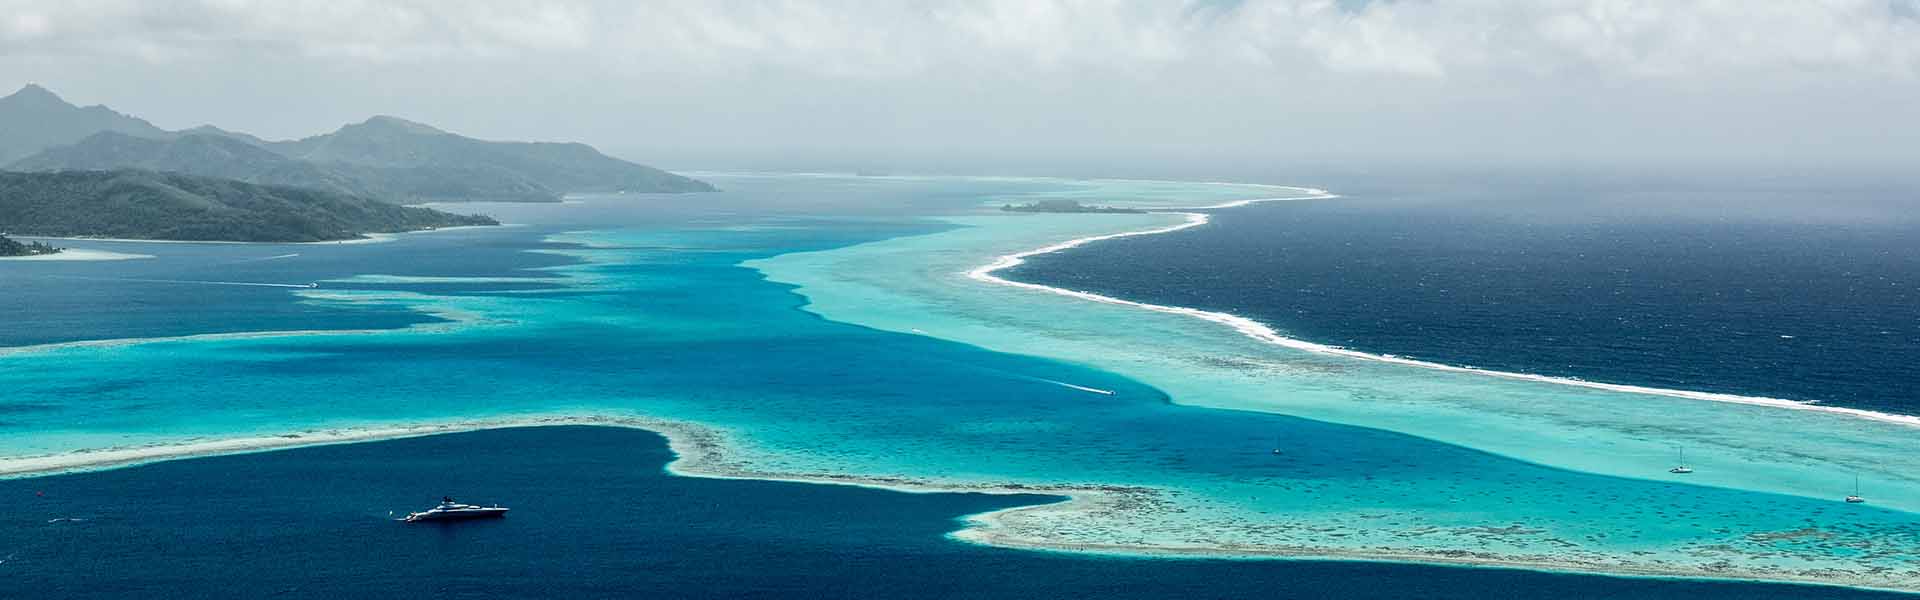 From Tahiti to Taha’a: exploring French Polynesia